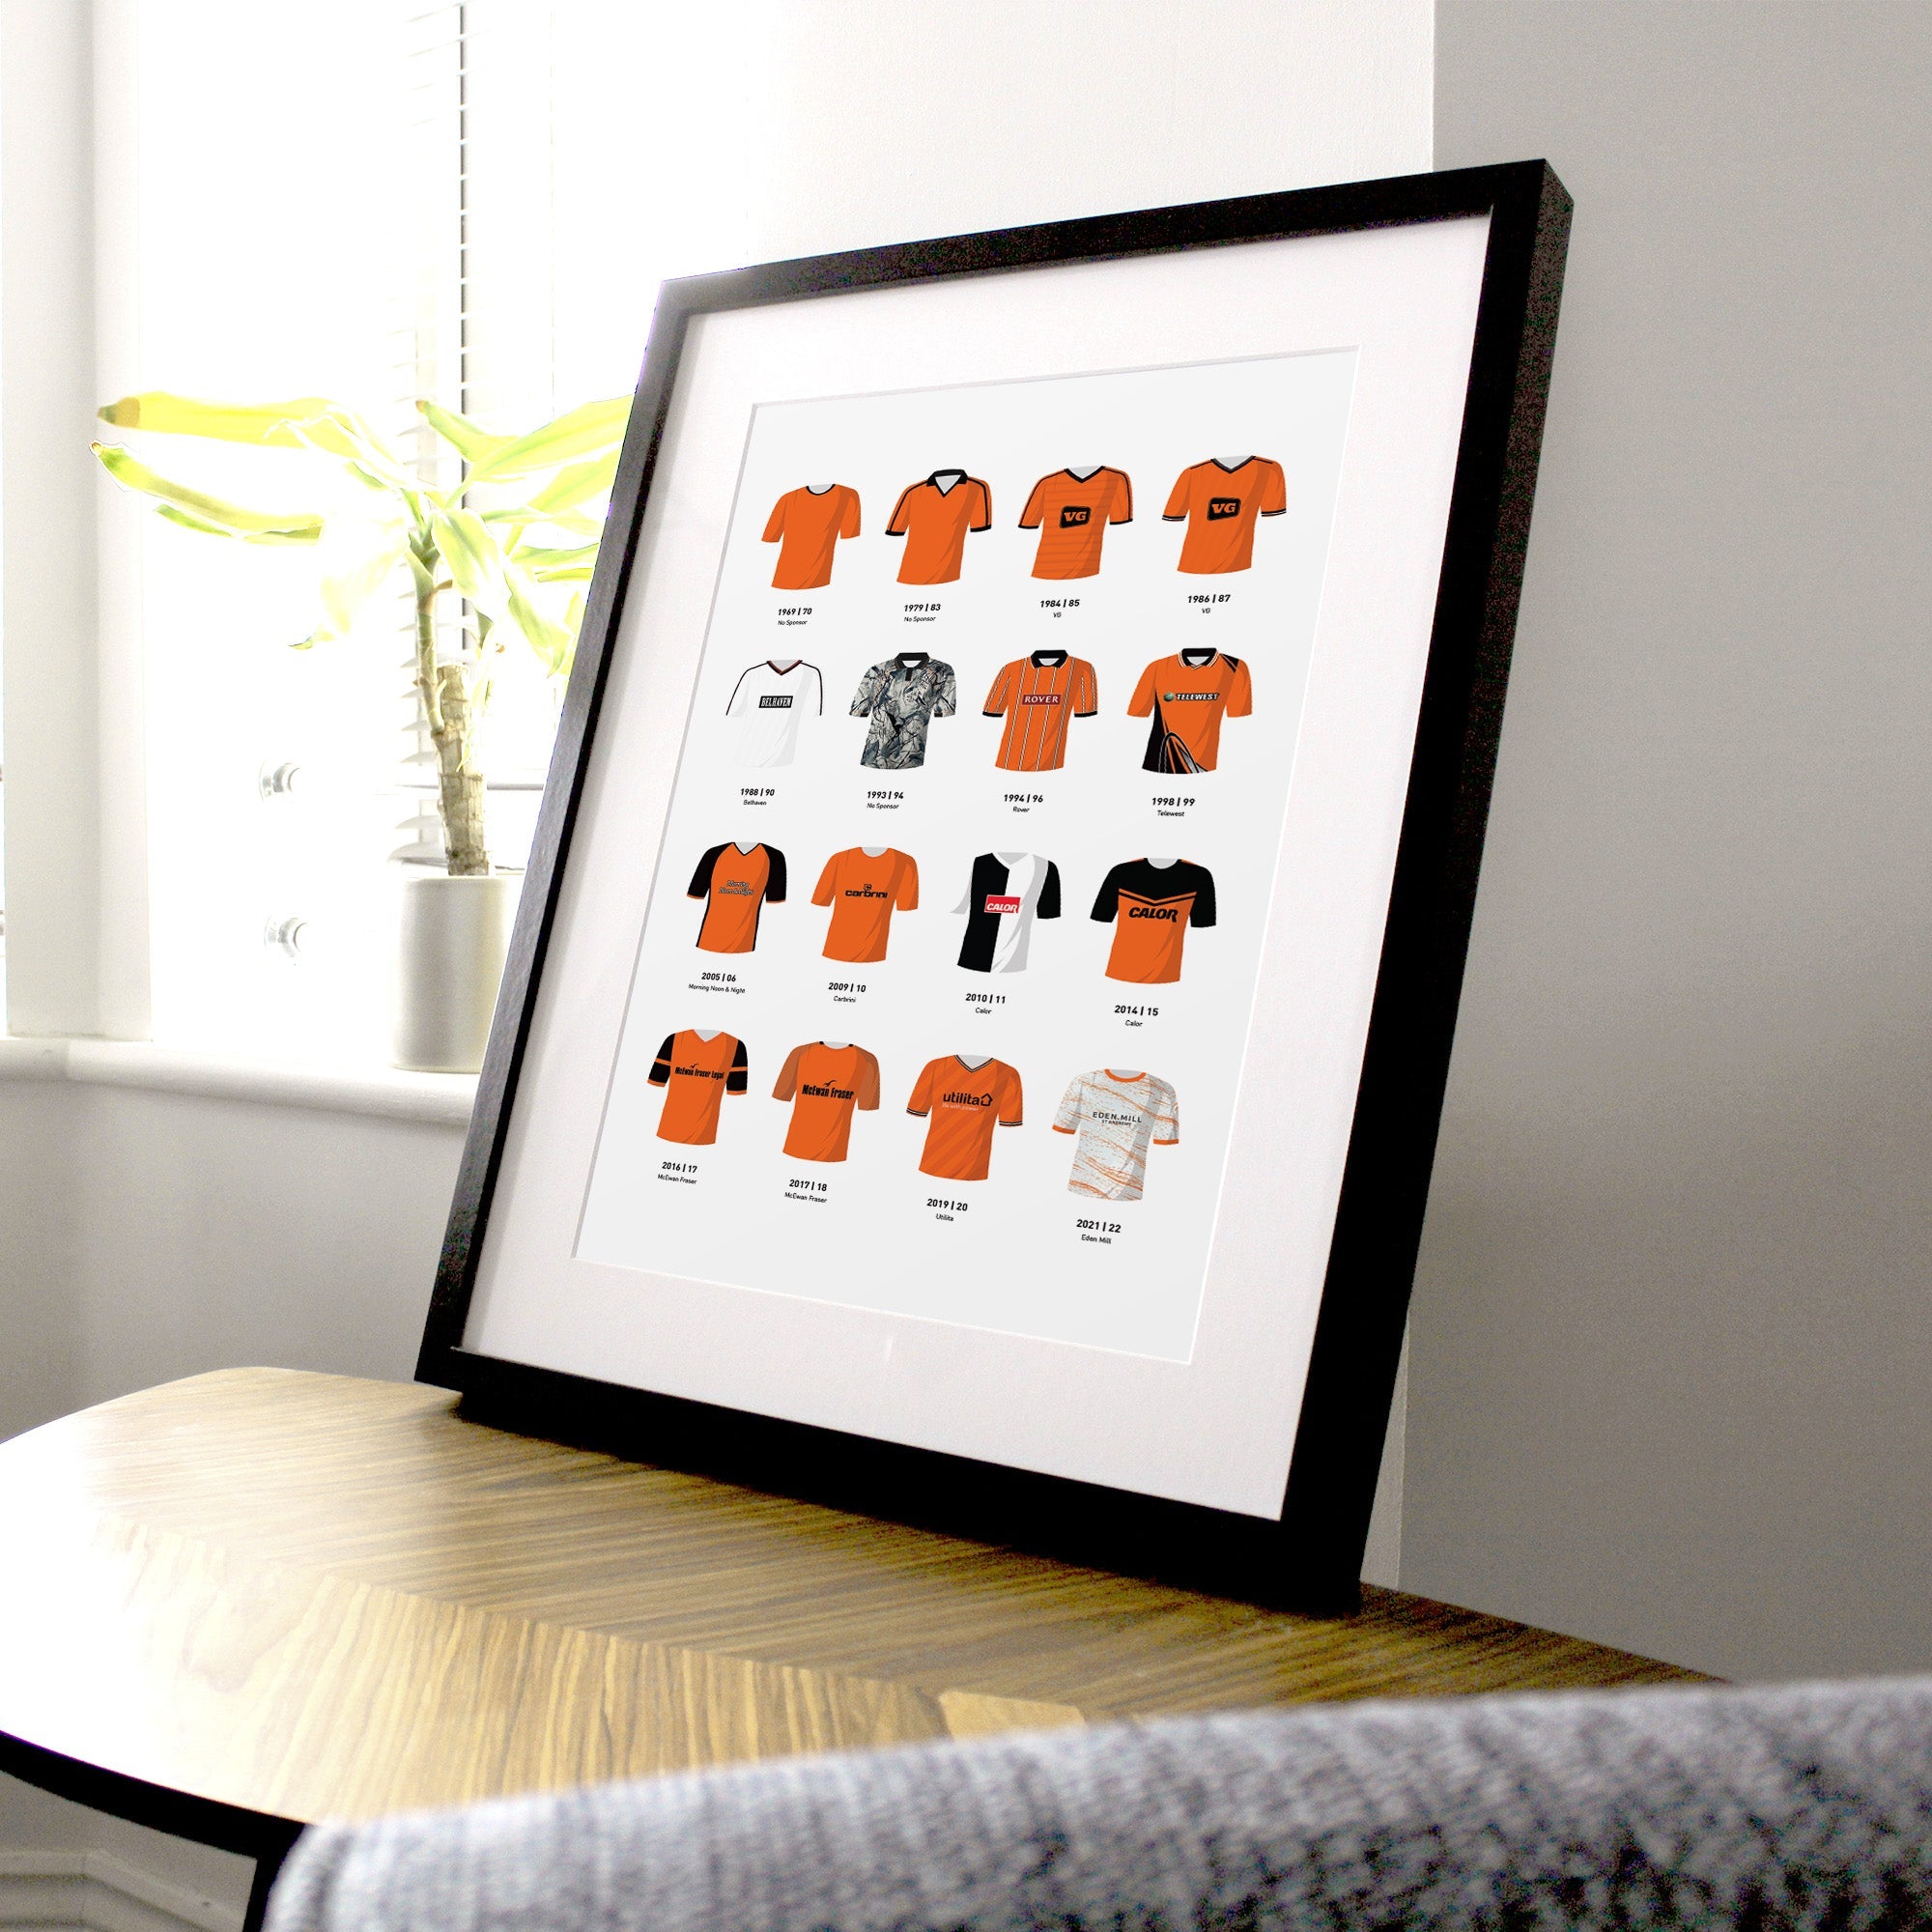 Dundee Utd Classic Kits Football Team Print Good Team On Paper